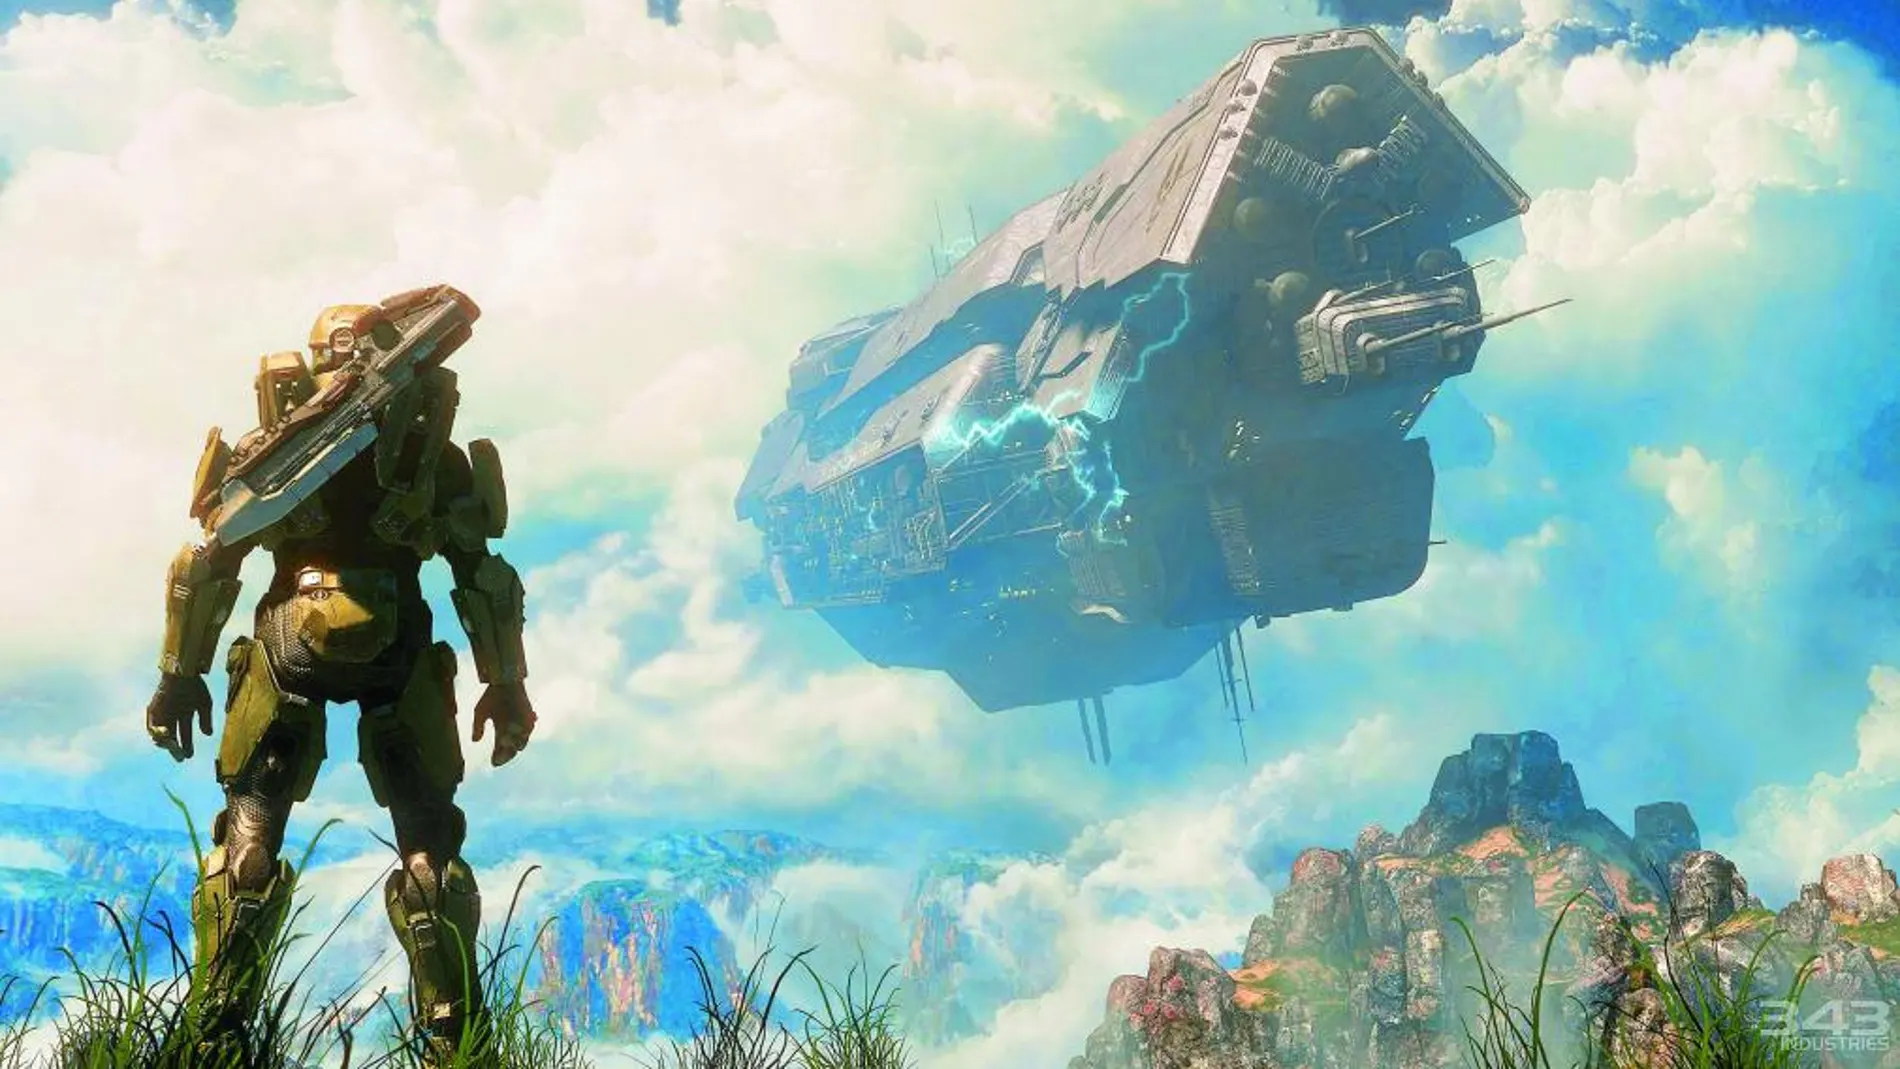 Violentos alienígenas toman el mando en la serie de acción futurista «Halo 4»